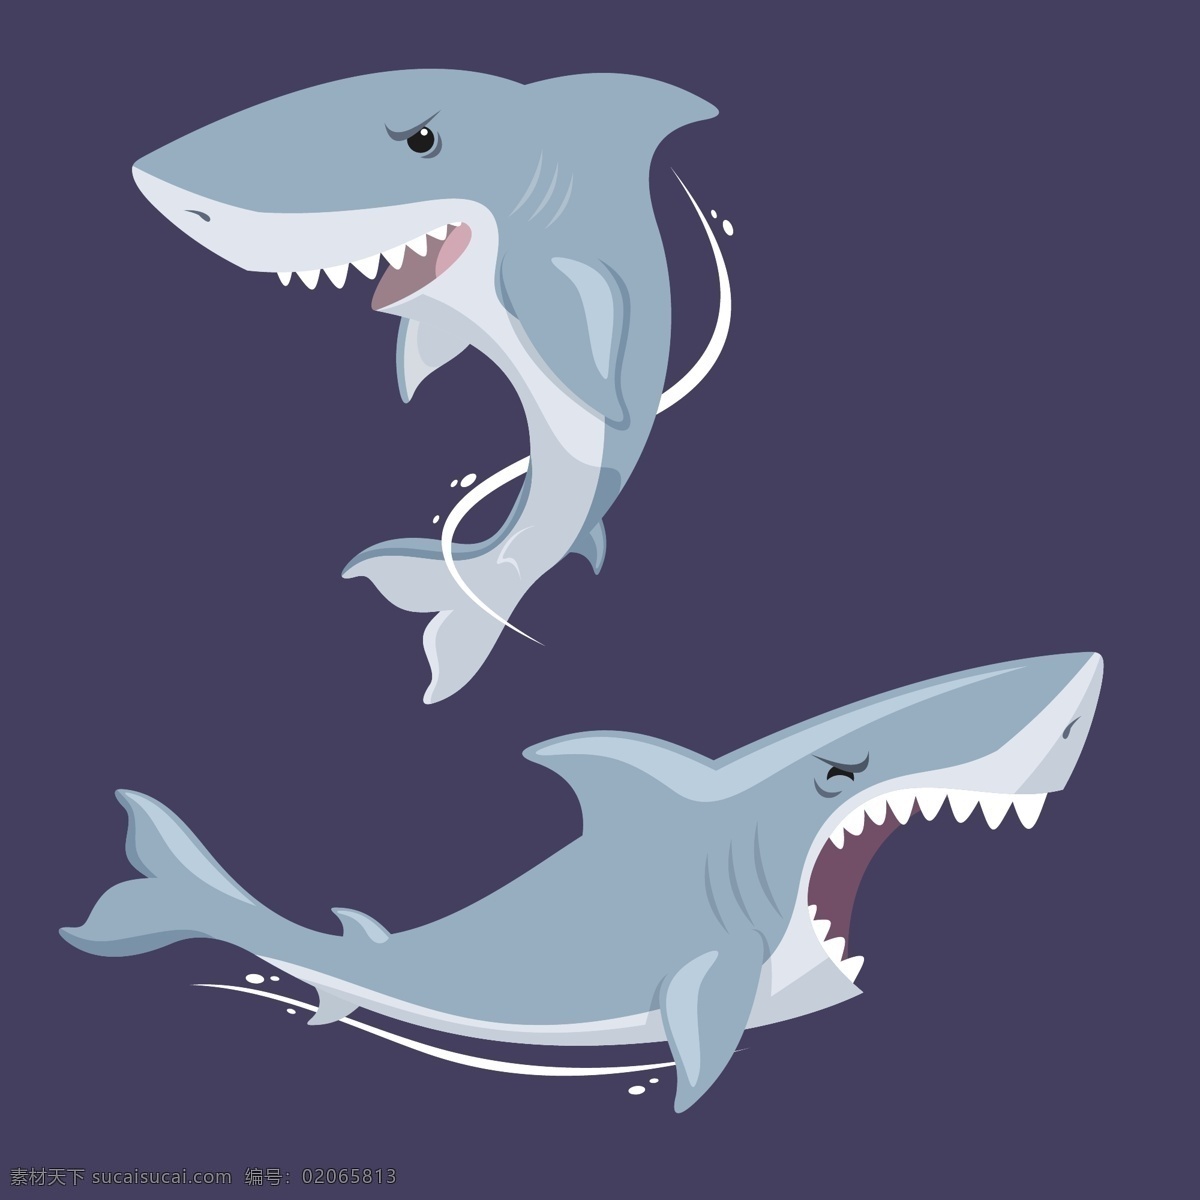 蓝色 背景 两 只 锋利 牙齿 大 鲨鱼 蓝色背景 两只锋利牙齿 大鲨鱼